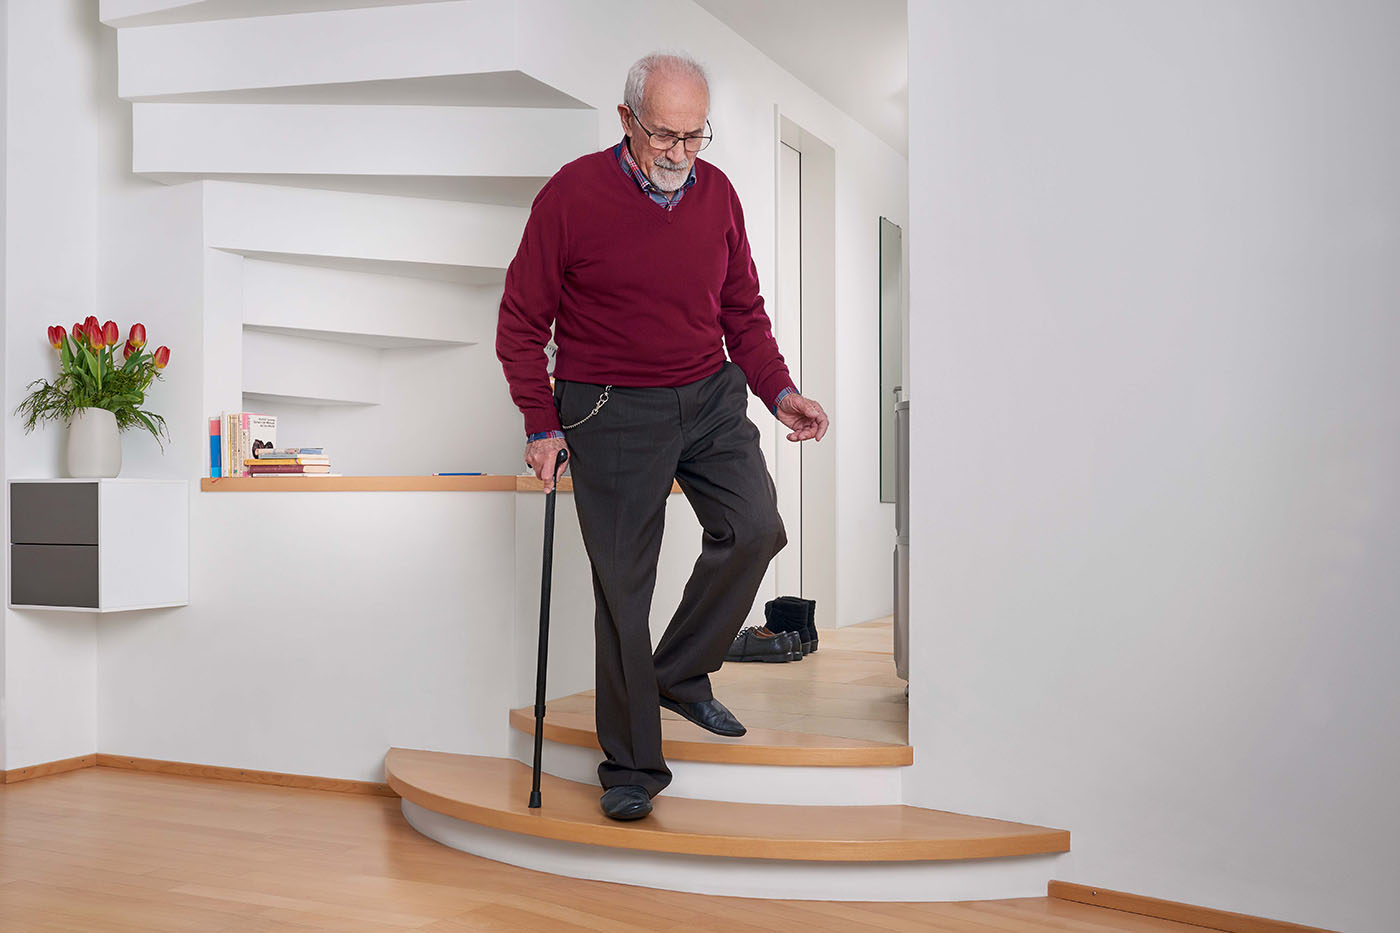 Un uomo anziano scende con cautela le scale con un bastone.